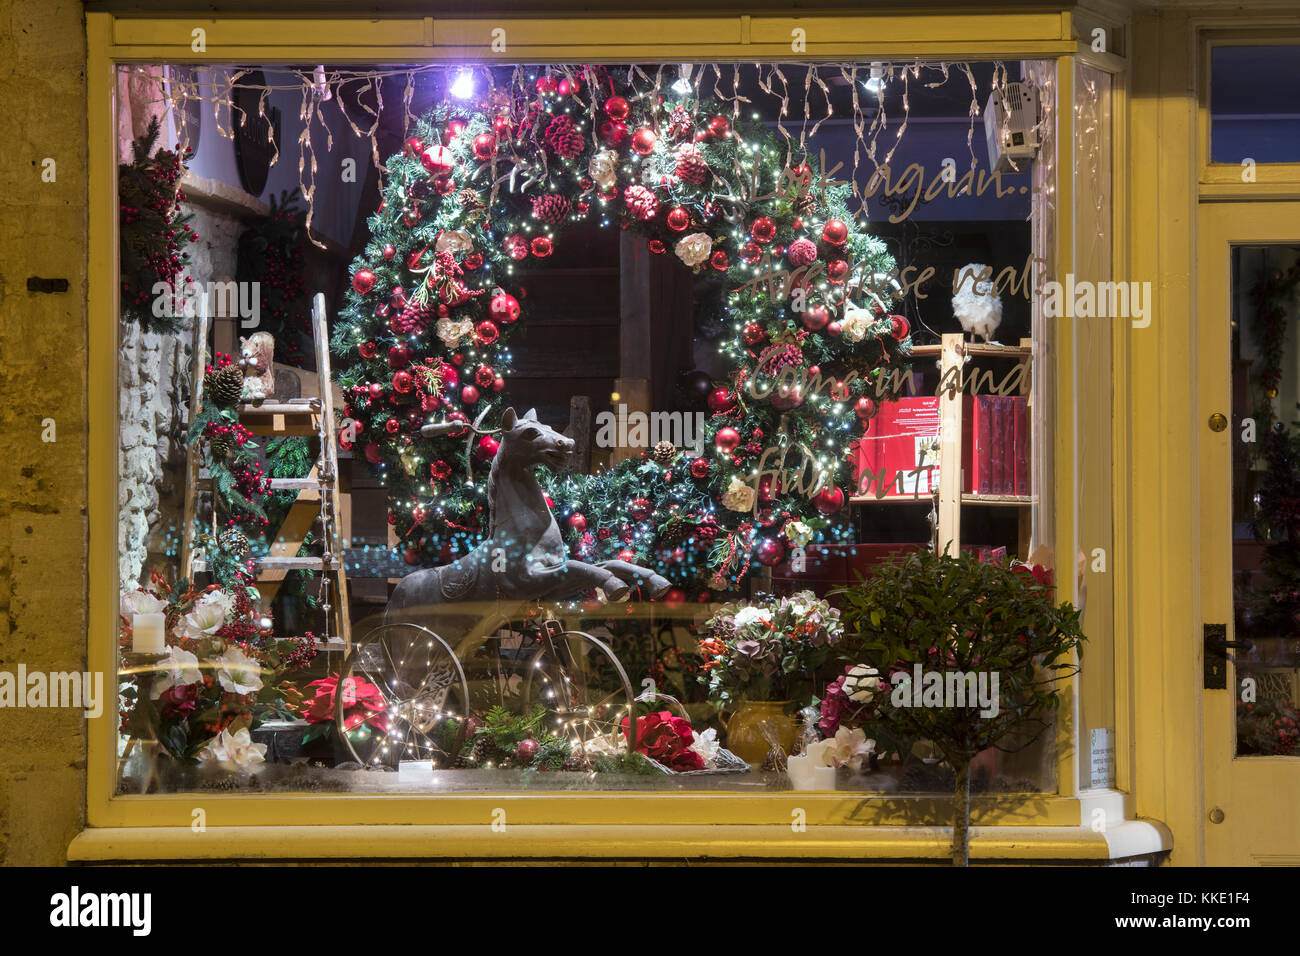 Scotts von Shop weihnachten Fenster verstauen Anzeige in den frühen Morgen. Verstauen auf der Wold, Cotswolds. Gloucestershire, England Stockfoto